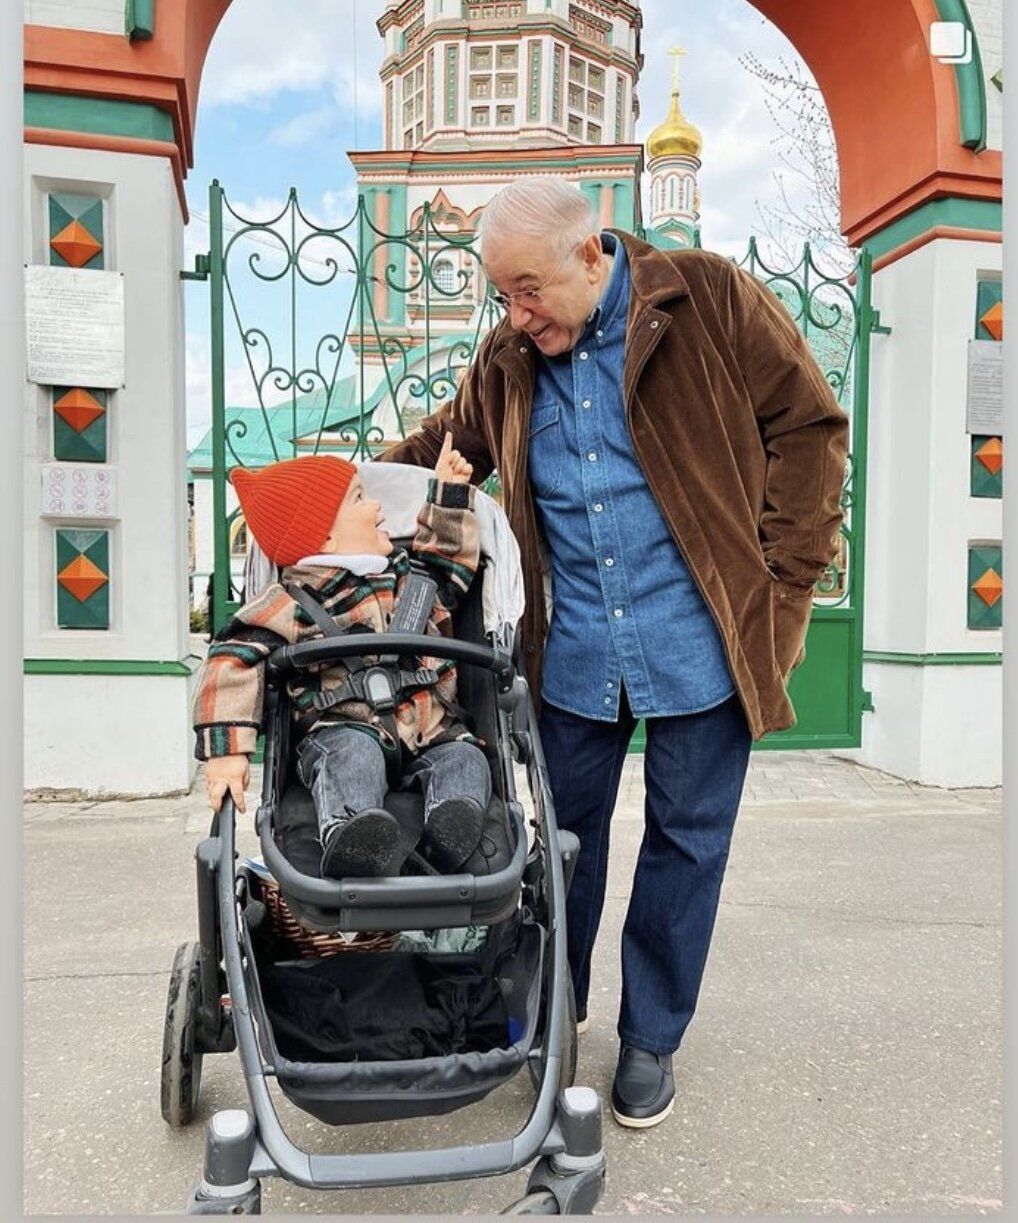 Евгений Петросян отправился на прогулку вместе с молодой женой и 2-летним сыном